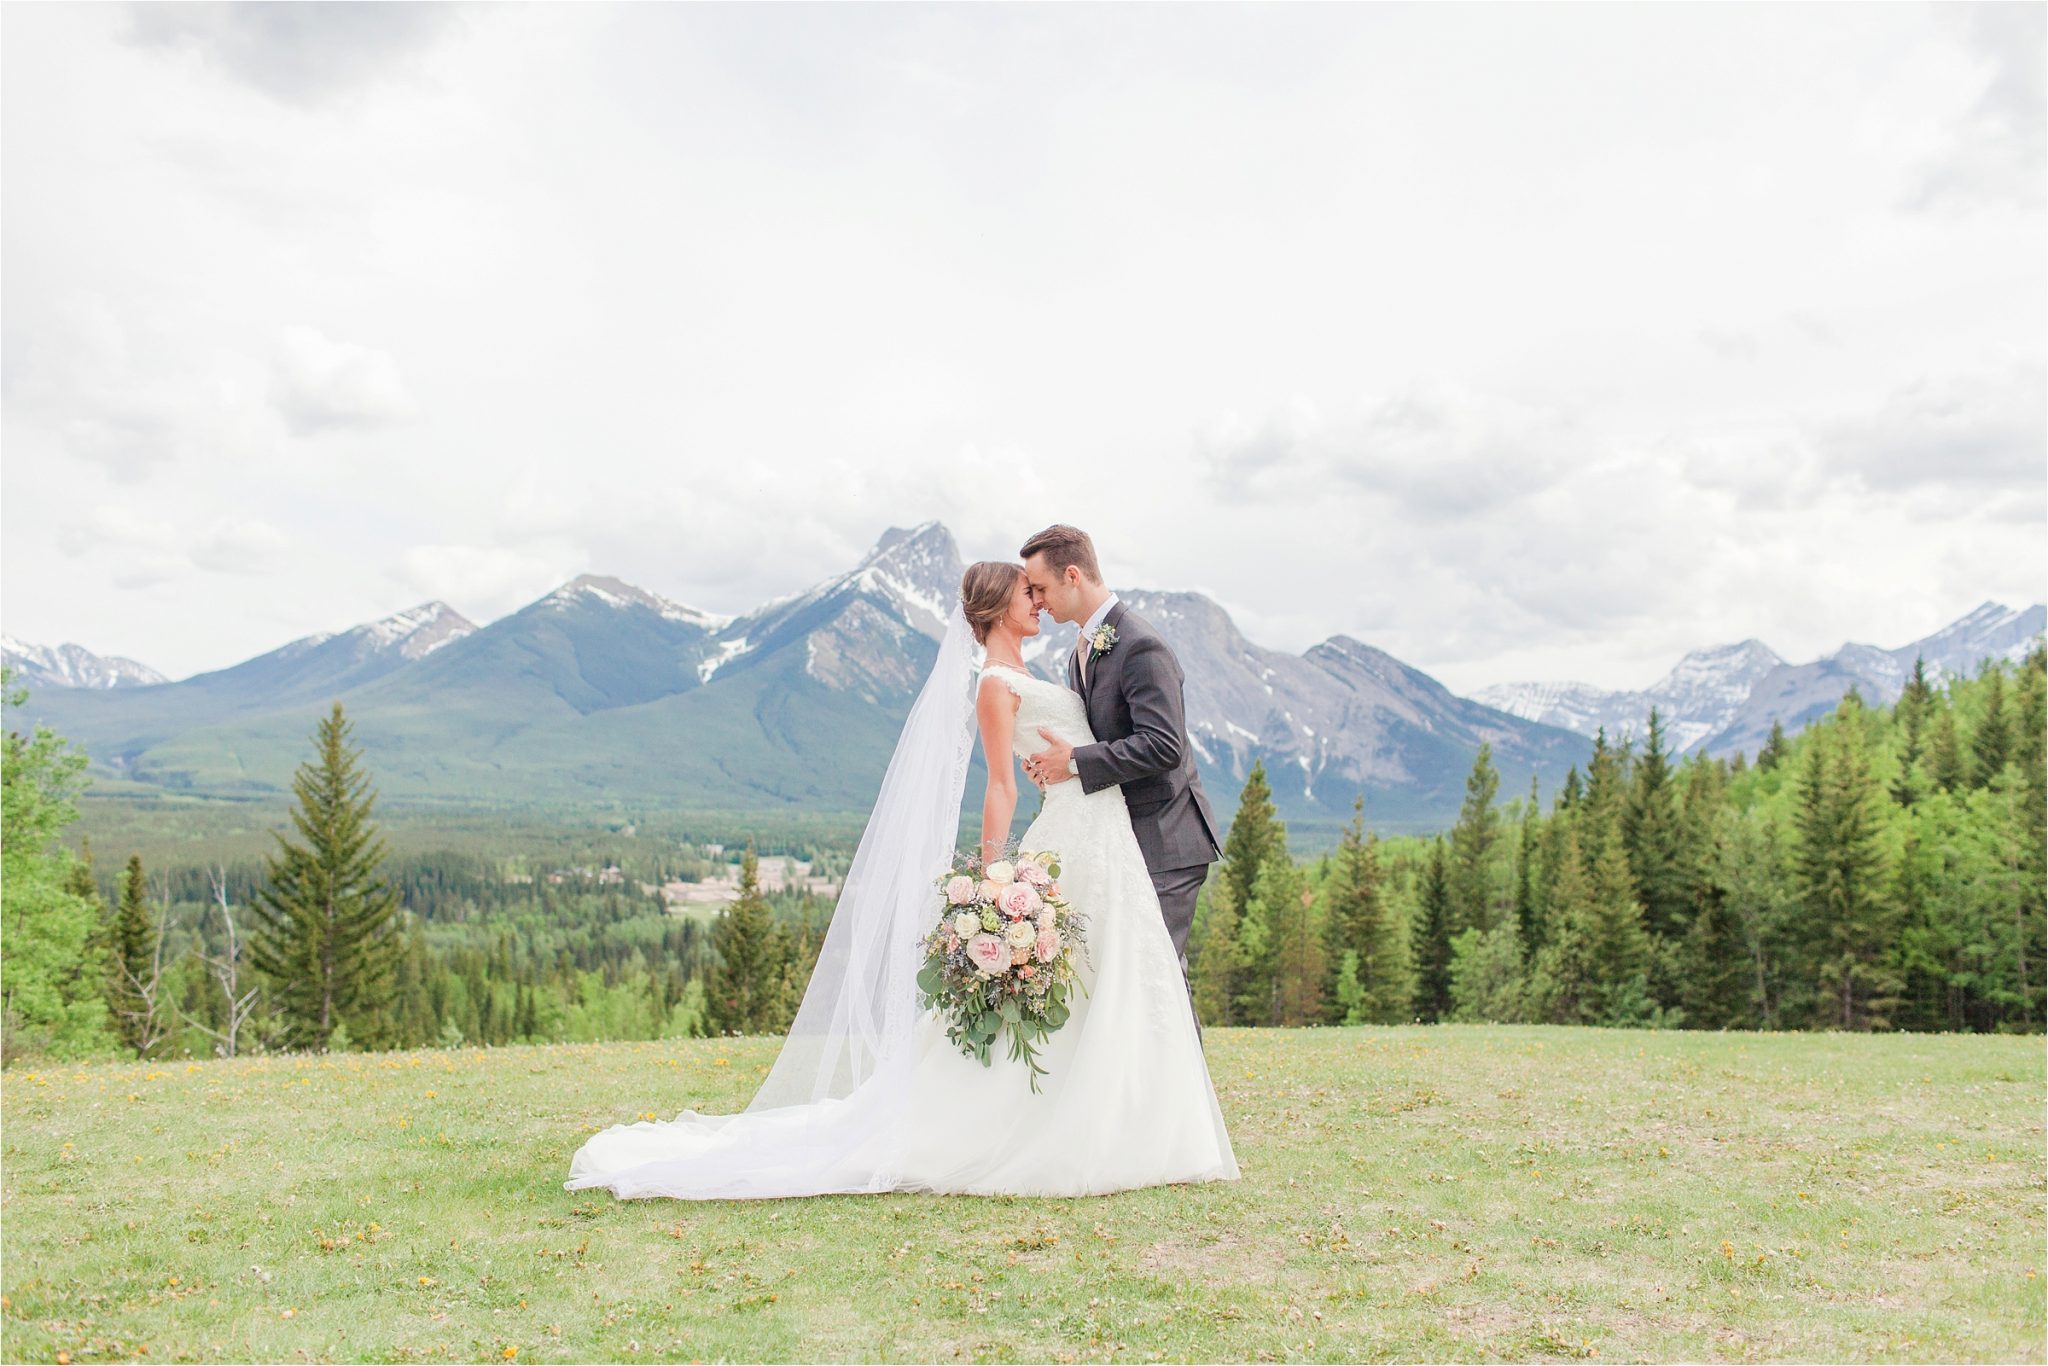 Engagement Session Preparation-Alabama Wedding Photographer-Mountain wedding-Candid couple shots-Canada wedding-Canada photographer